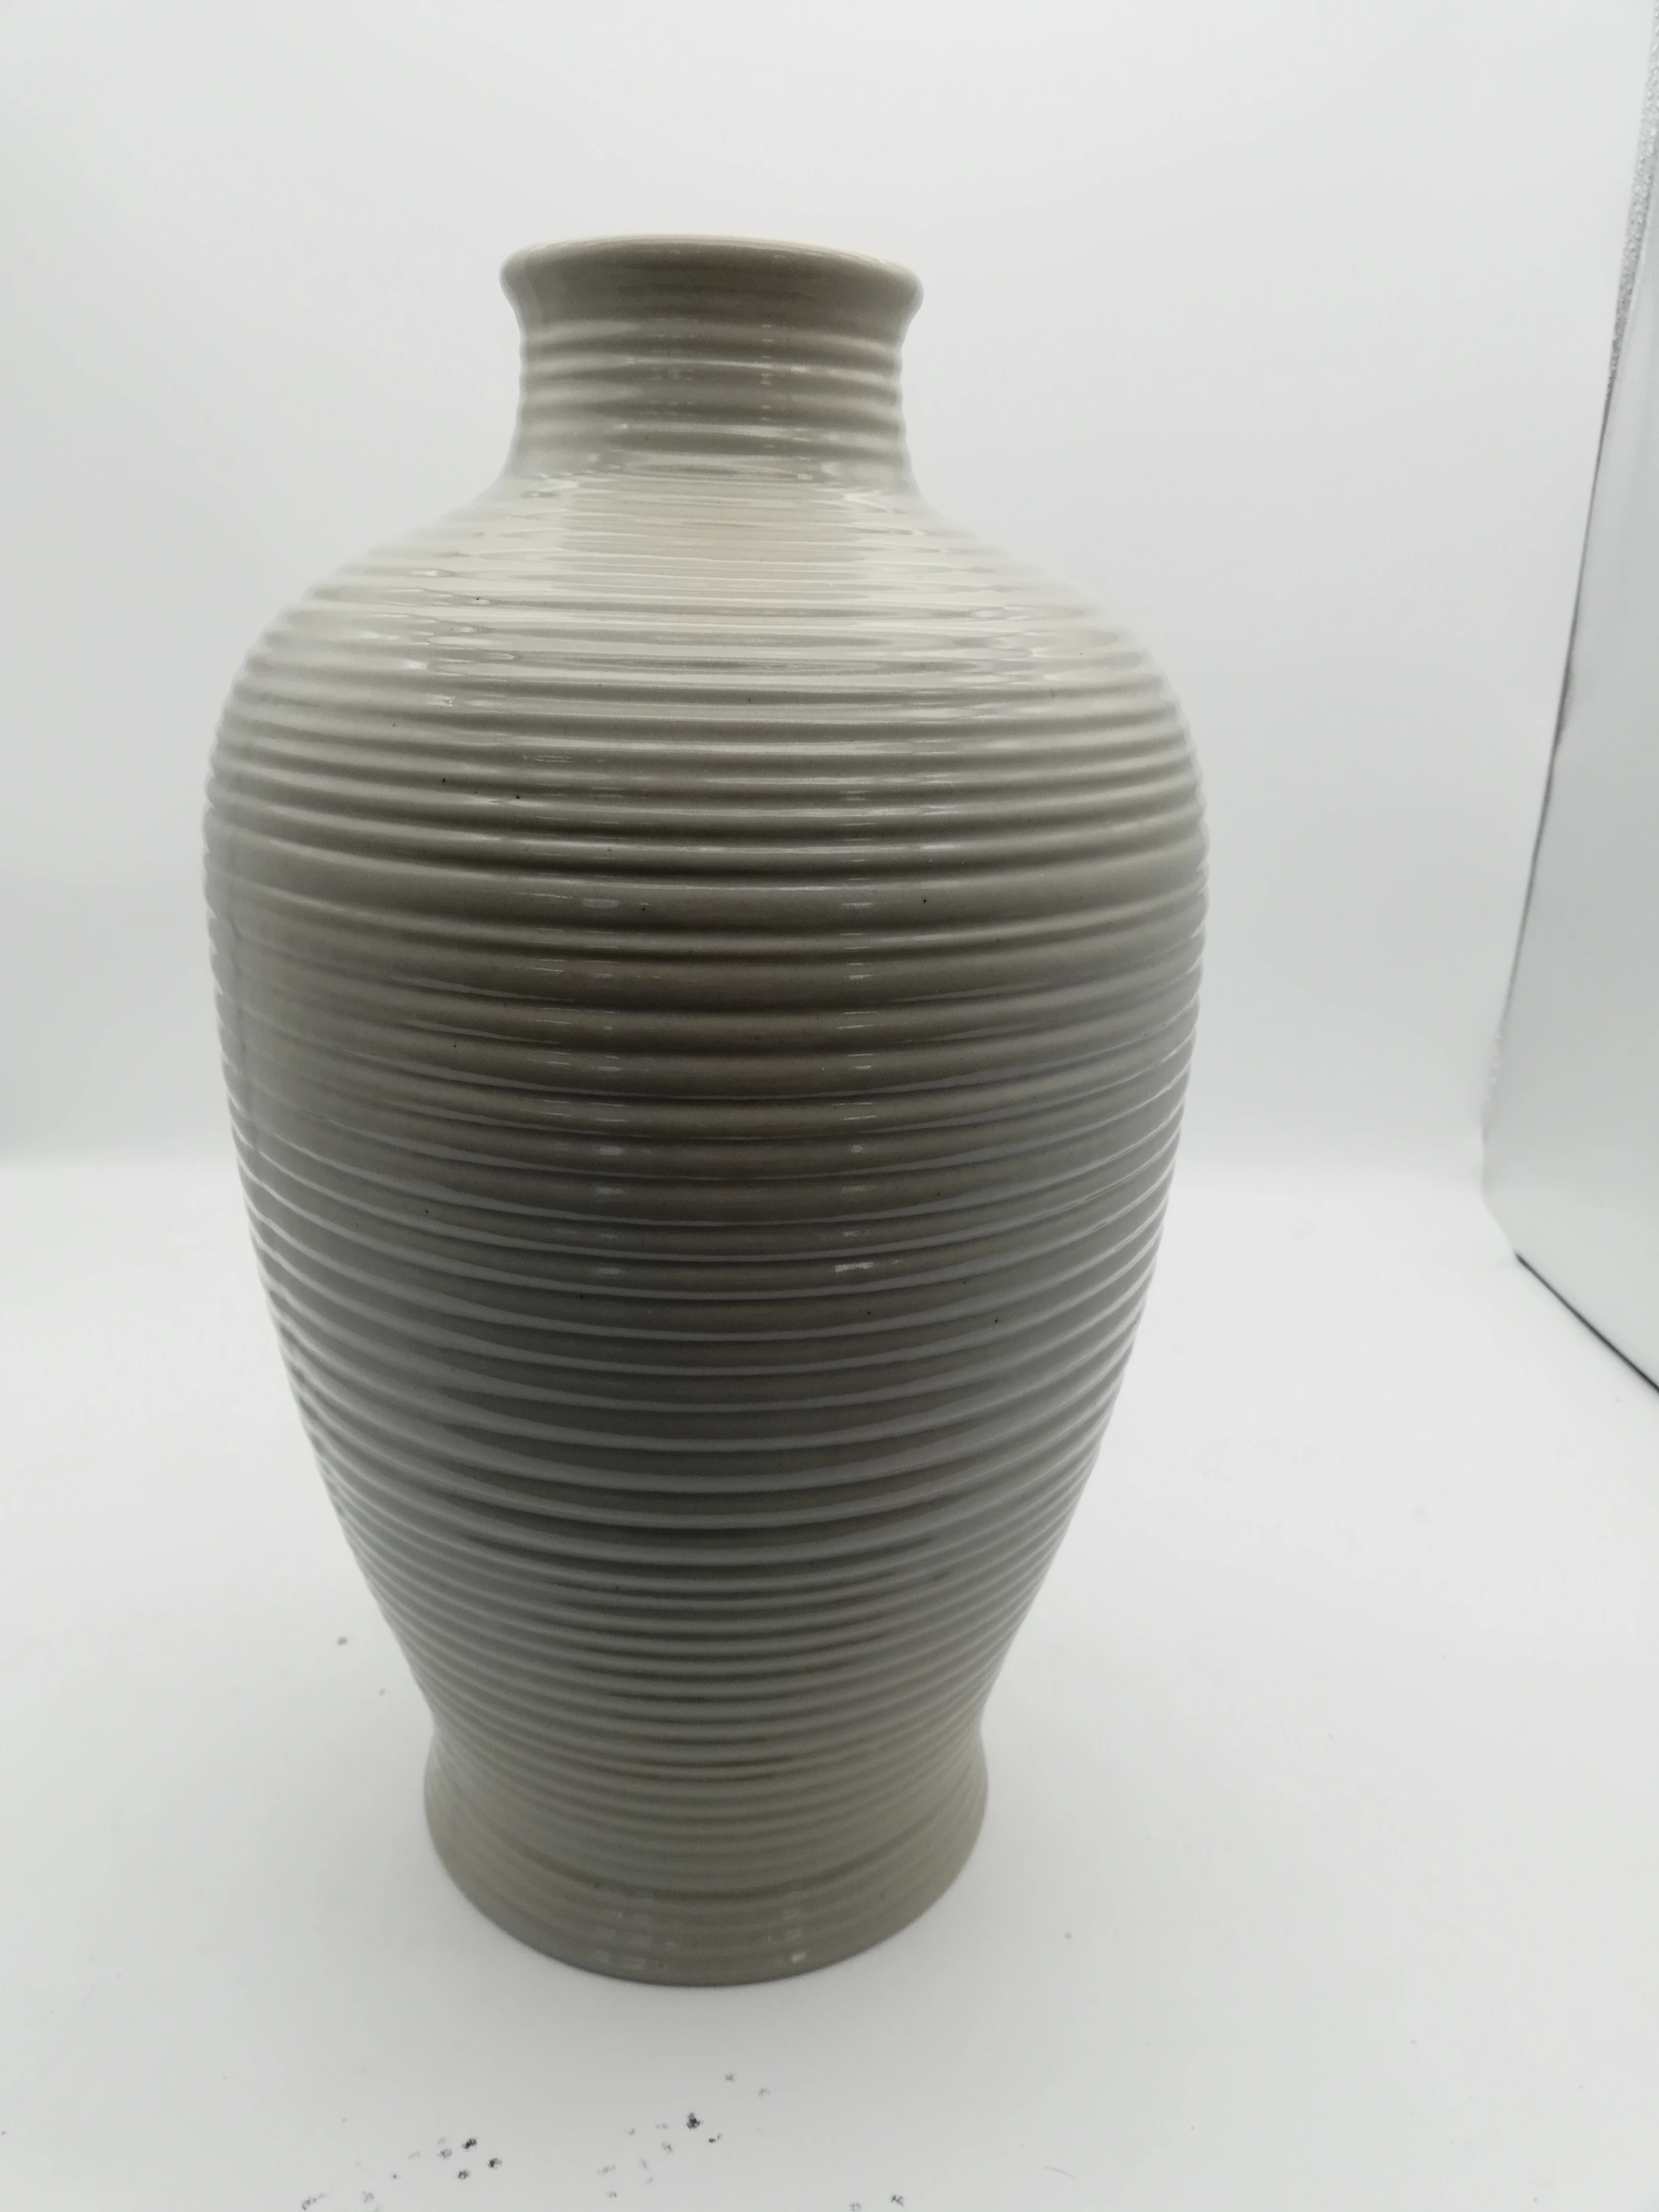 Modern customizable garden vases, ceramic vases, porcelain vases